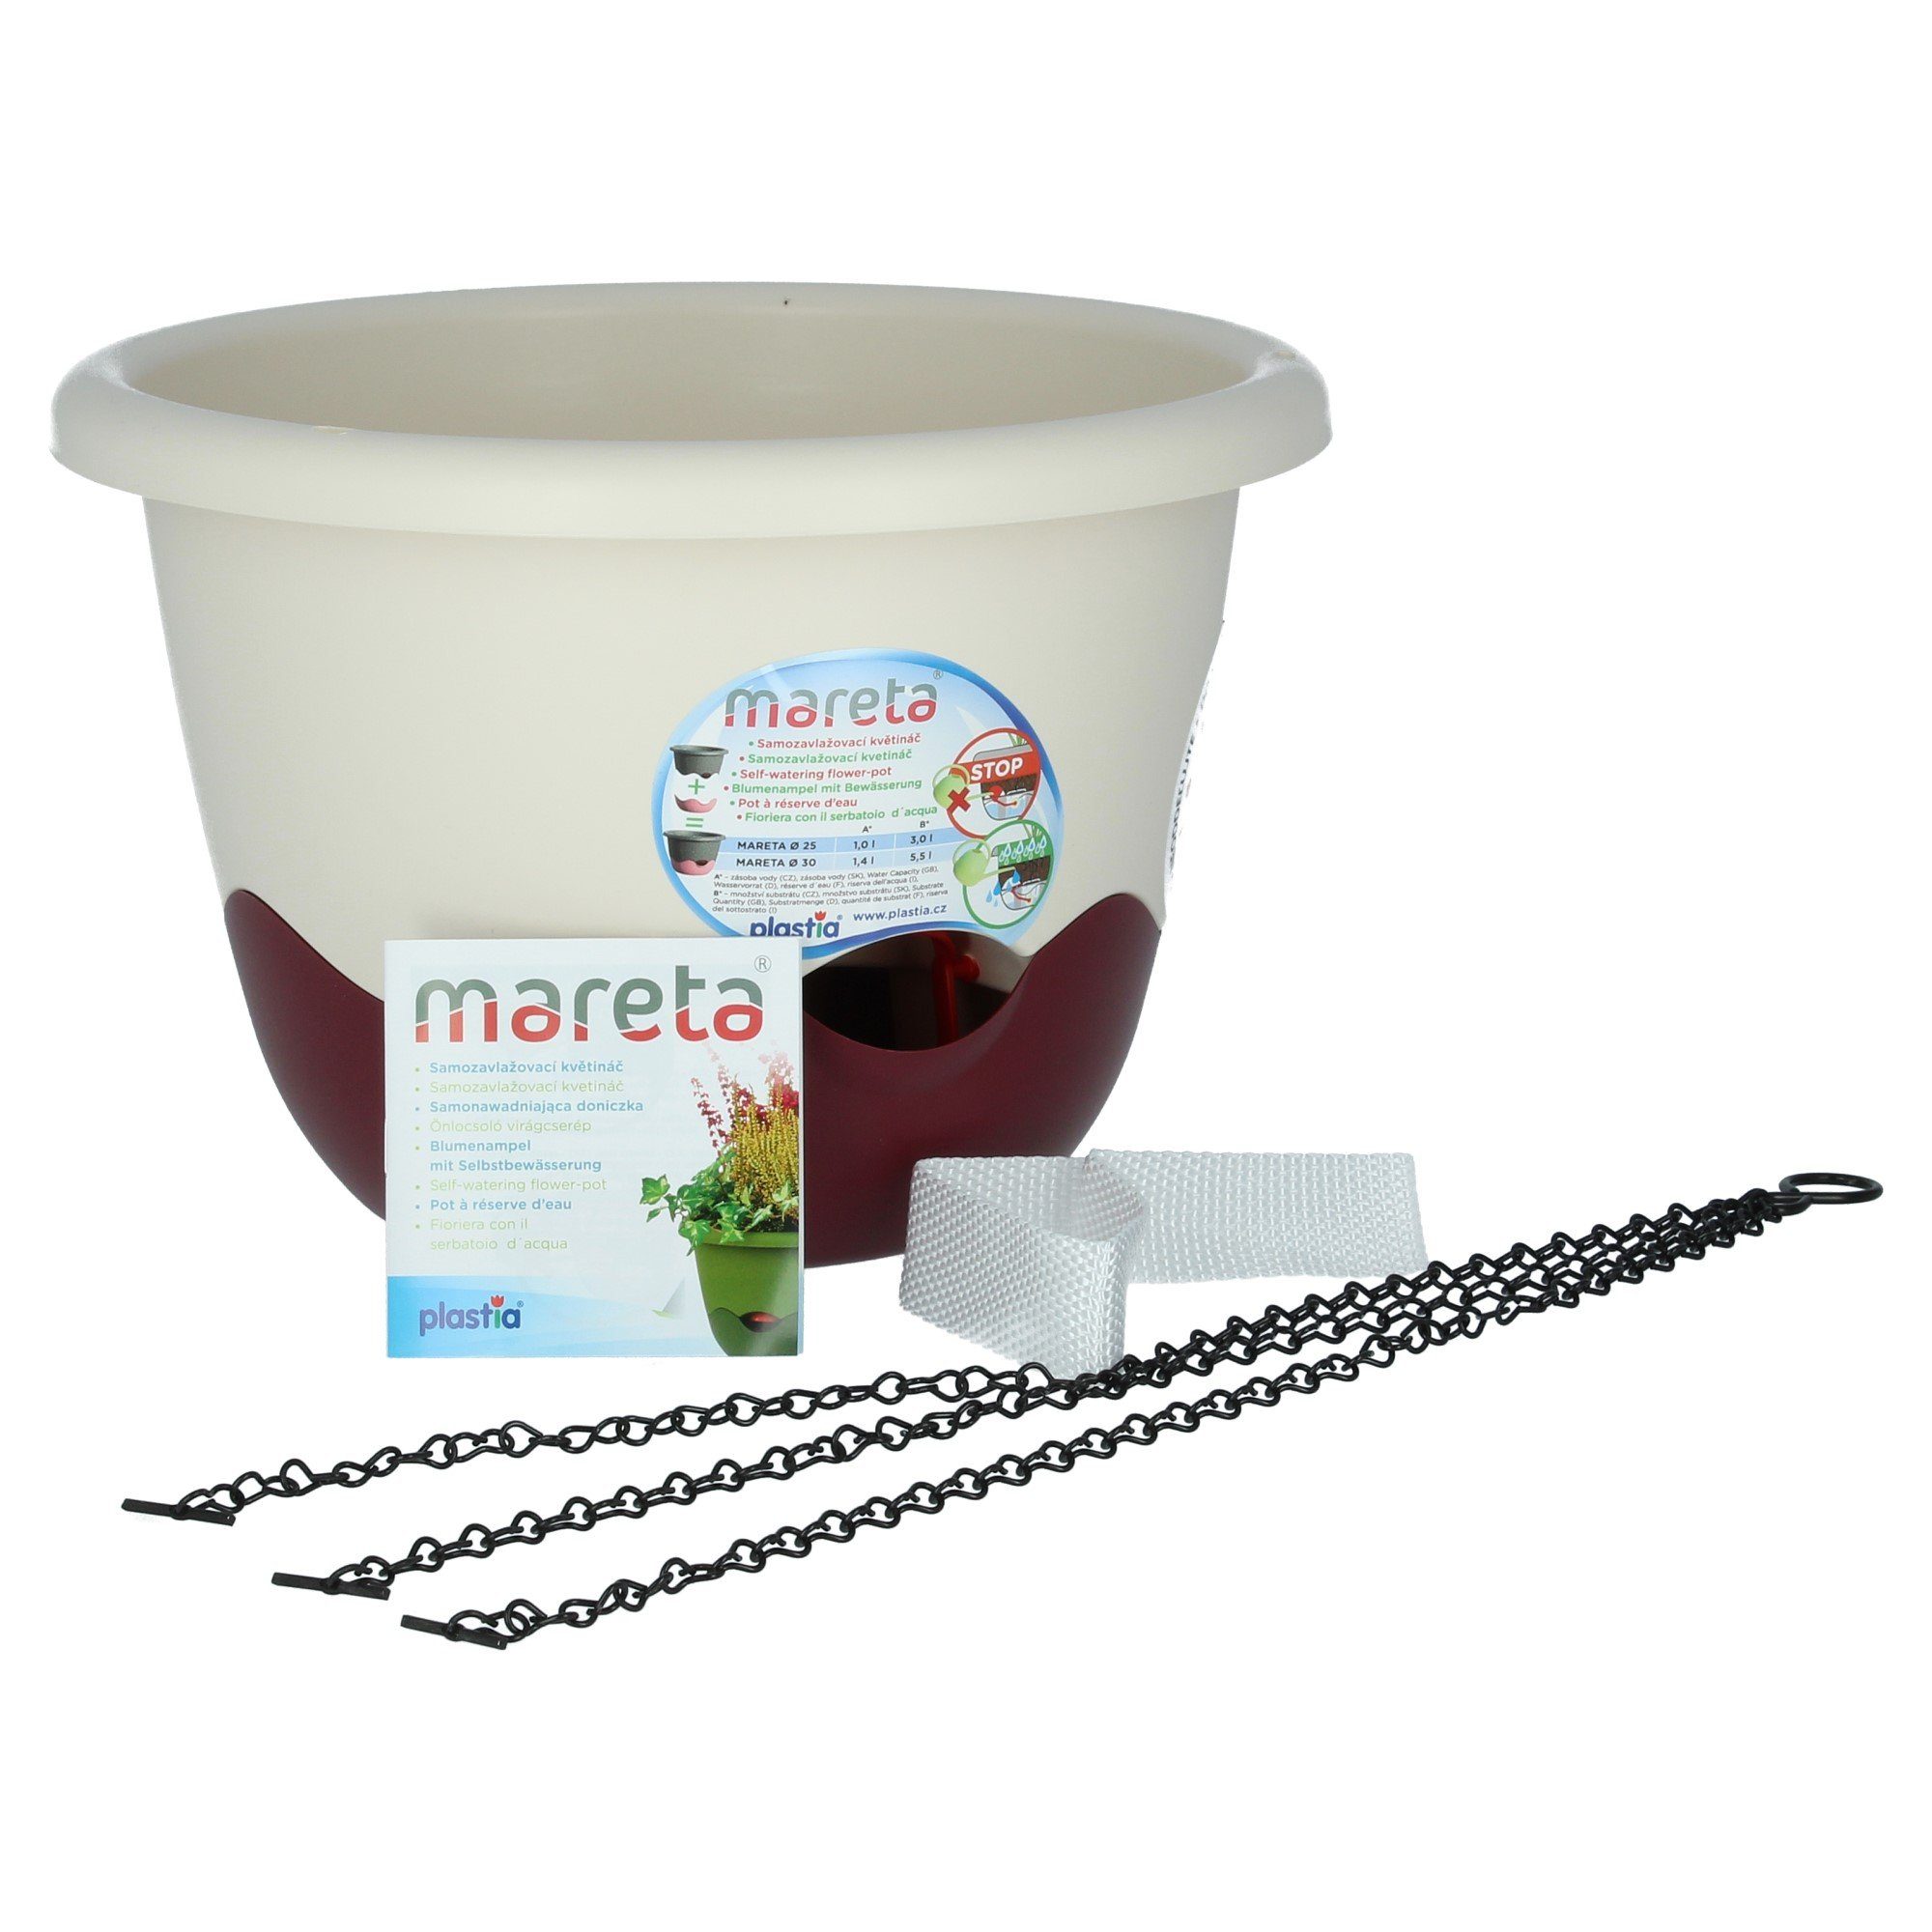 Blumentopf mit 30 Weinrot St) / Elfenbein PLASTIA Erdbewässerung Mareta (1